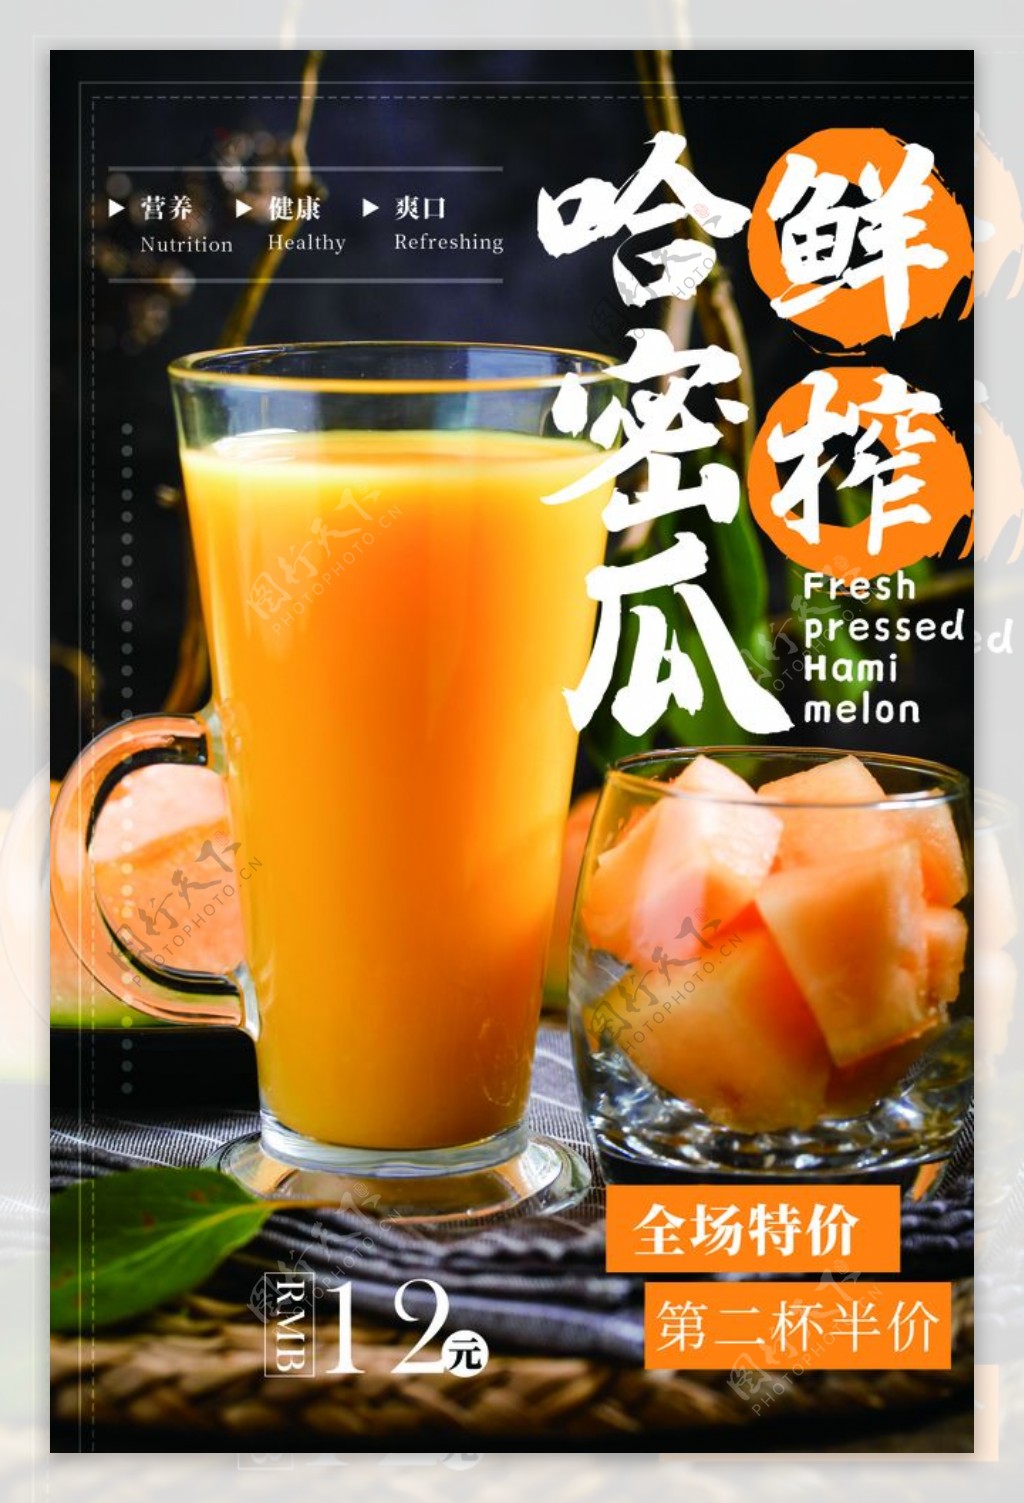 哈密瓜果汁促销活动宣传海报素材图片